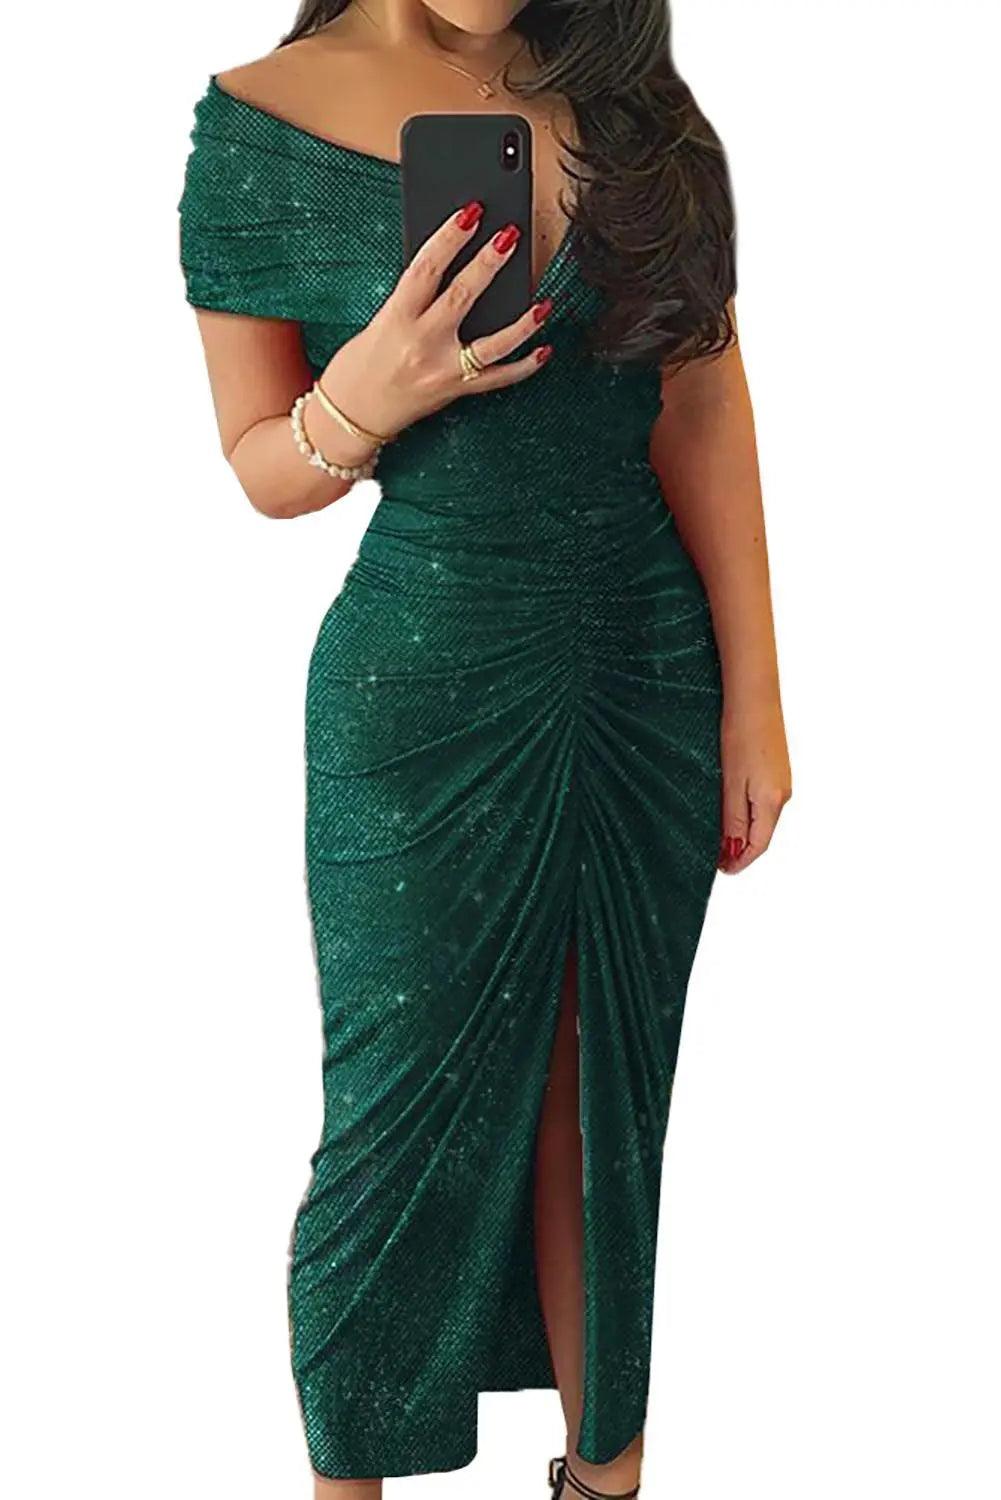 Green/Black Glitter V Neck Off Shoulder Ruched Slit Party Elegant Dress - L & M Kee, LLC